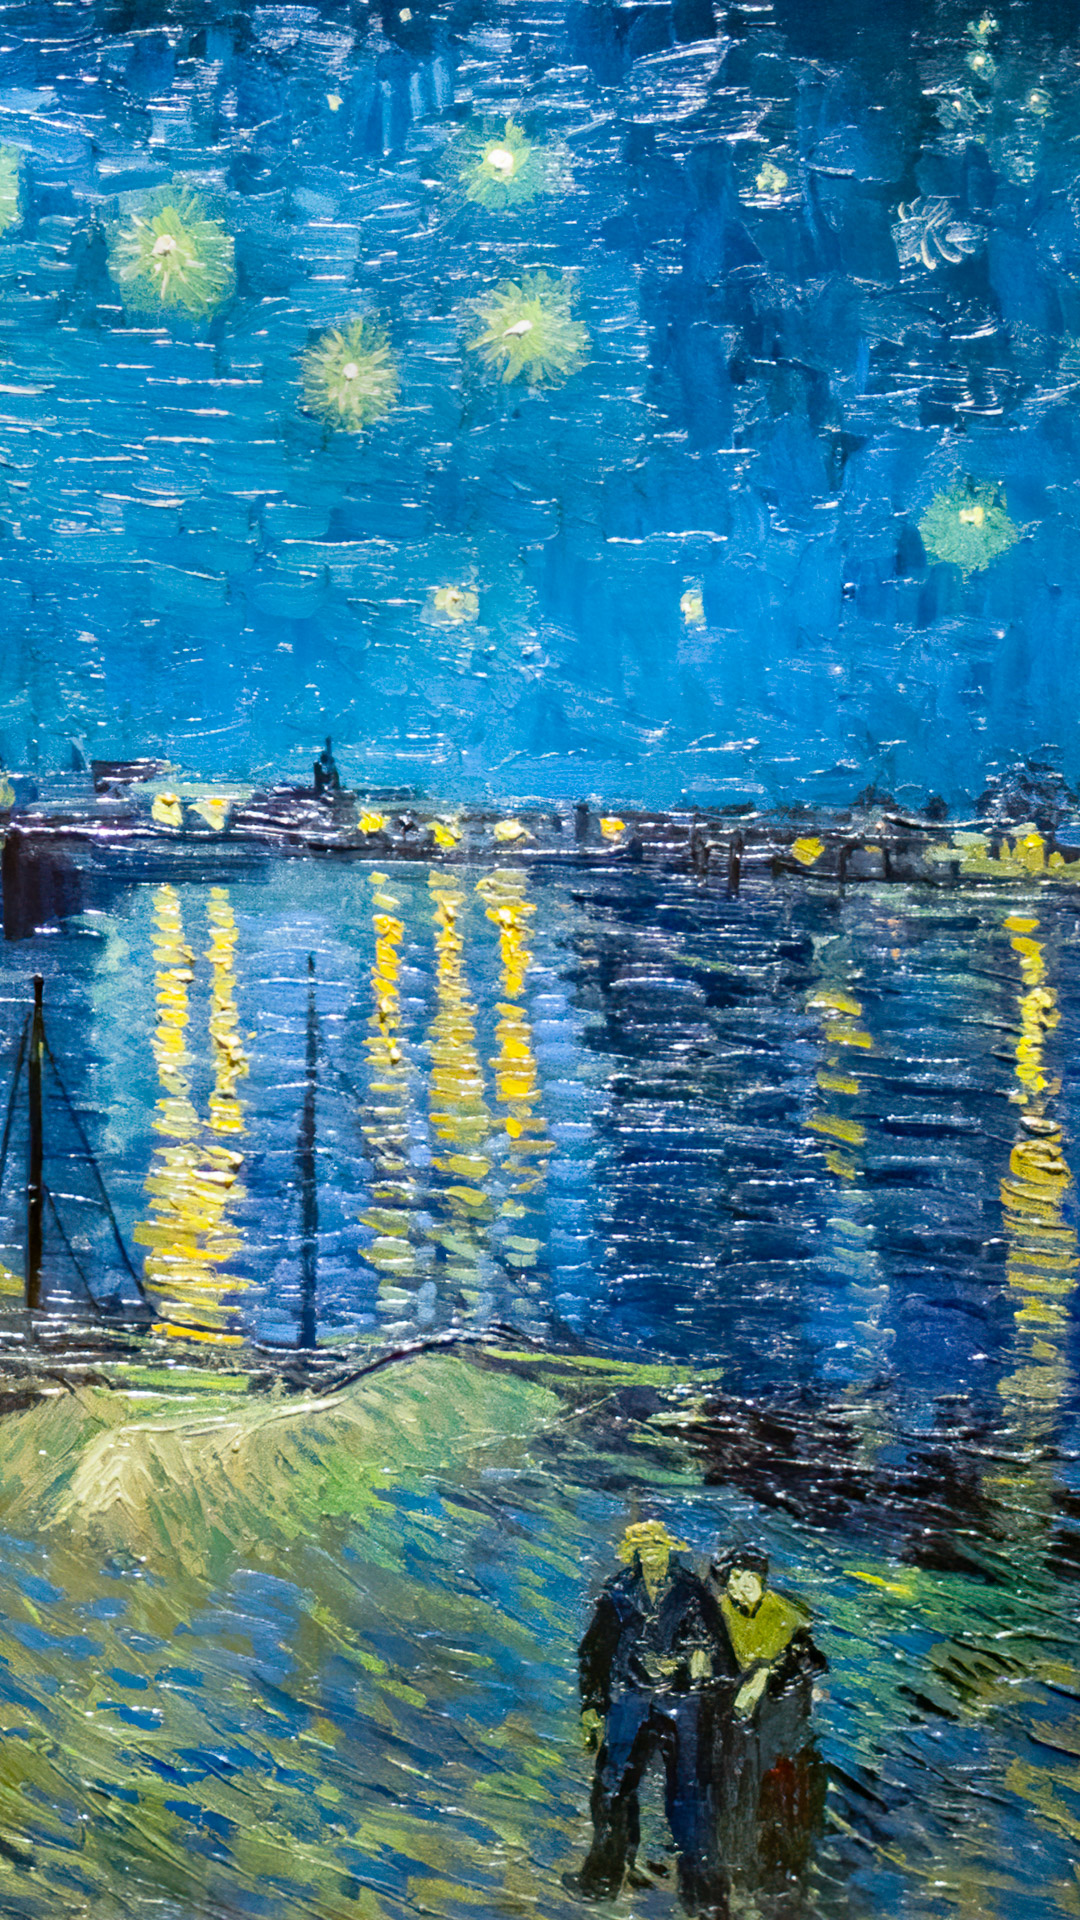 Immergez-vous dans le monde de l'art avec notre téléchargement gratuit de fond d'écran pour téléphone, présentant la célèbre peinture de Van Gogh, Nuit étoilée, un chef-d'œuvre du post-impressionnisme.